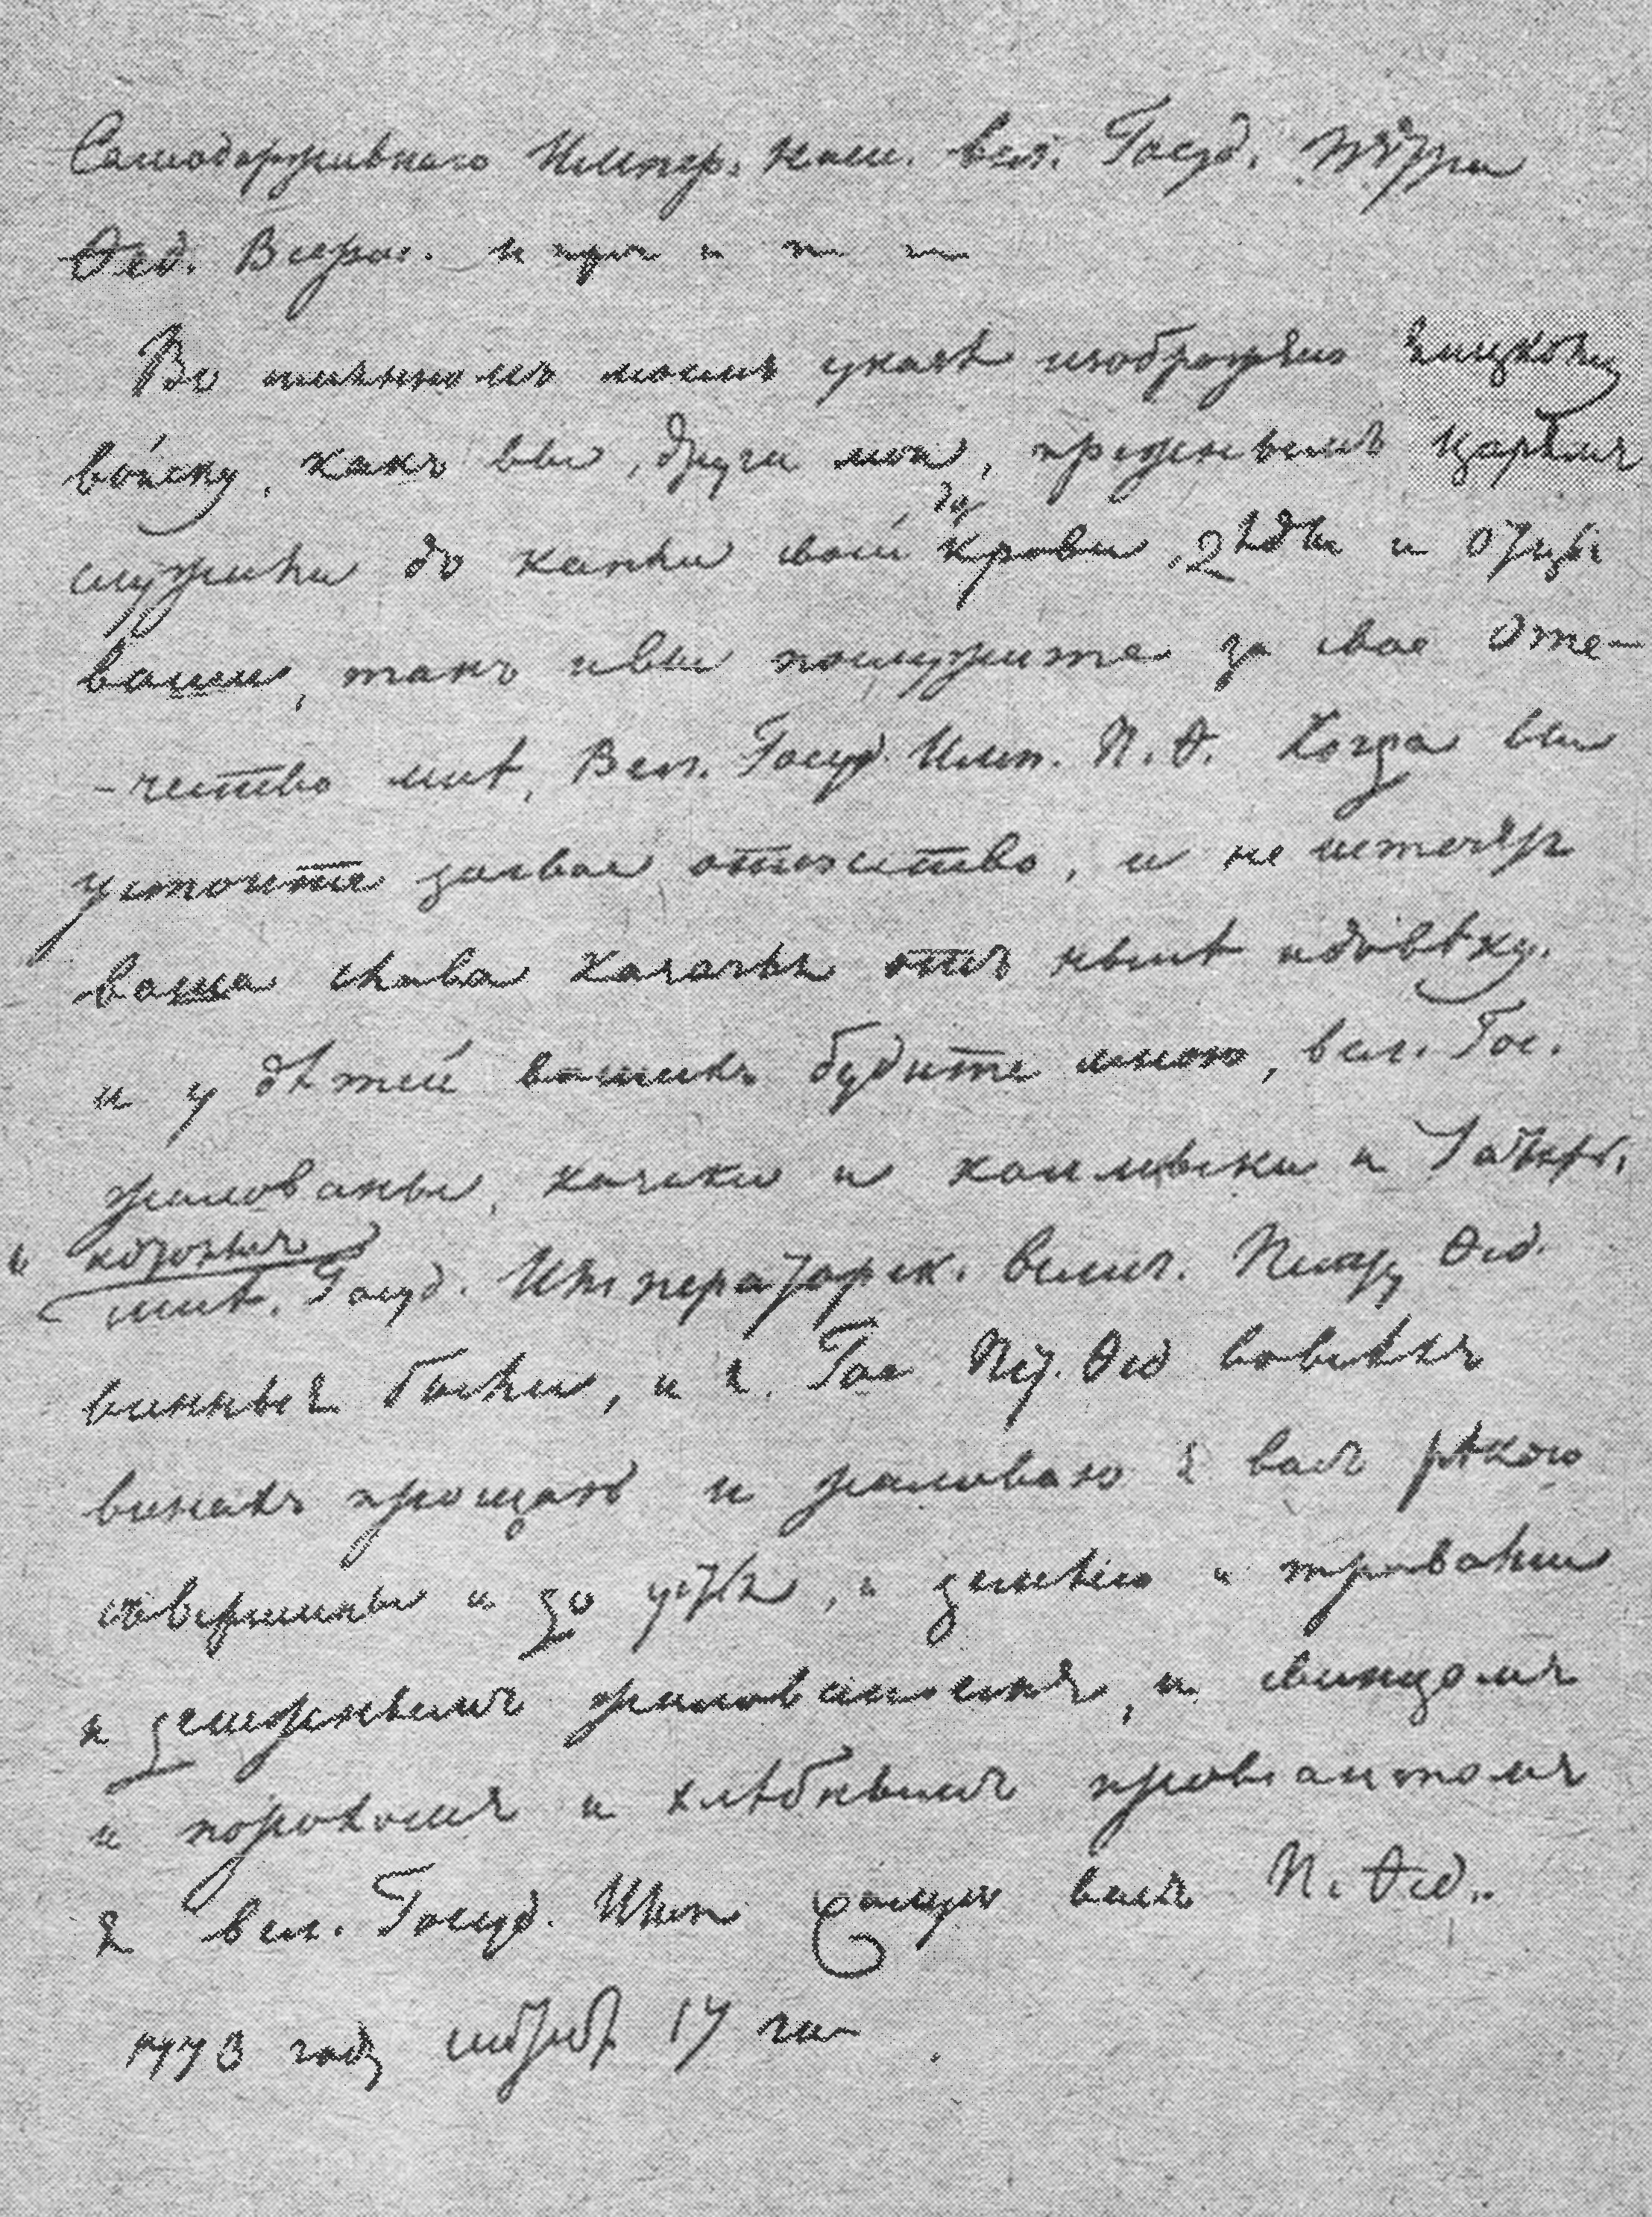 Именной указ Пугачева от 17 сентября 1773 г. Копия Пушкина. ПД, № 379, л. 2